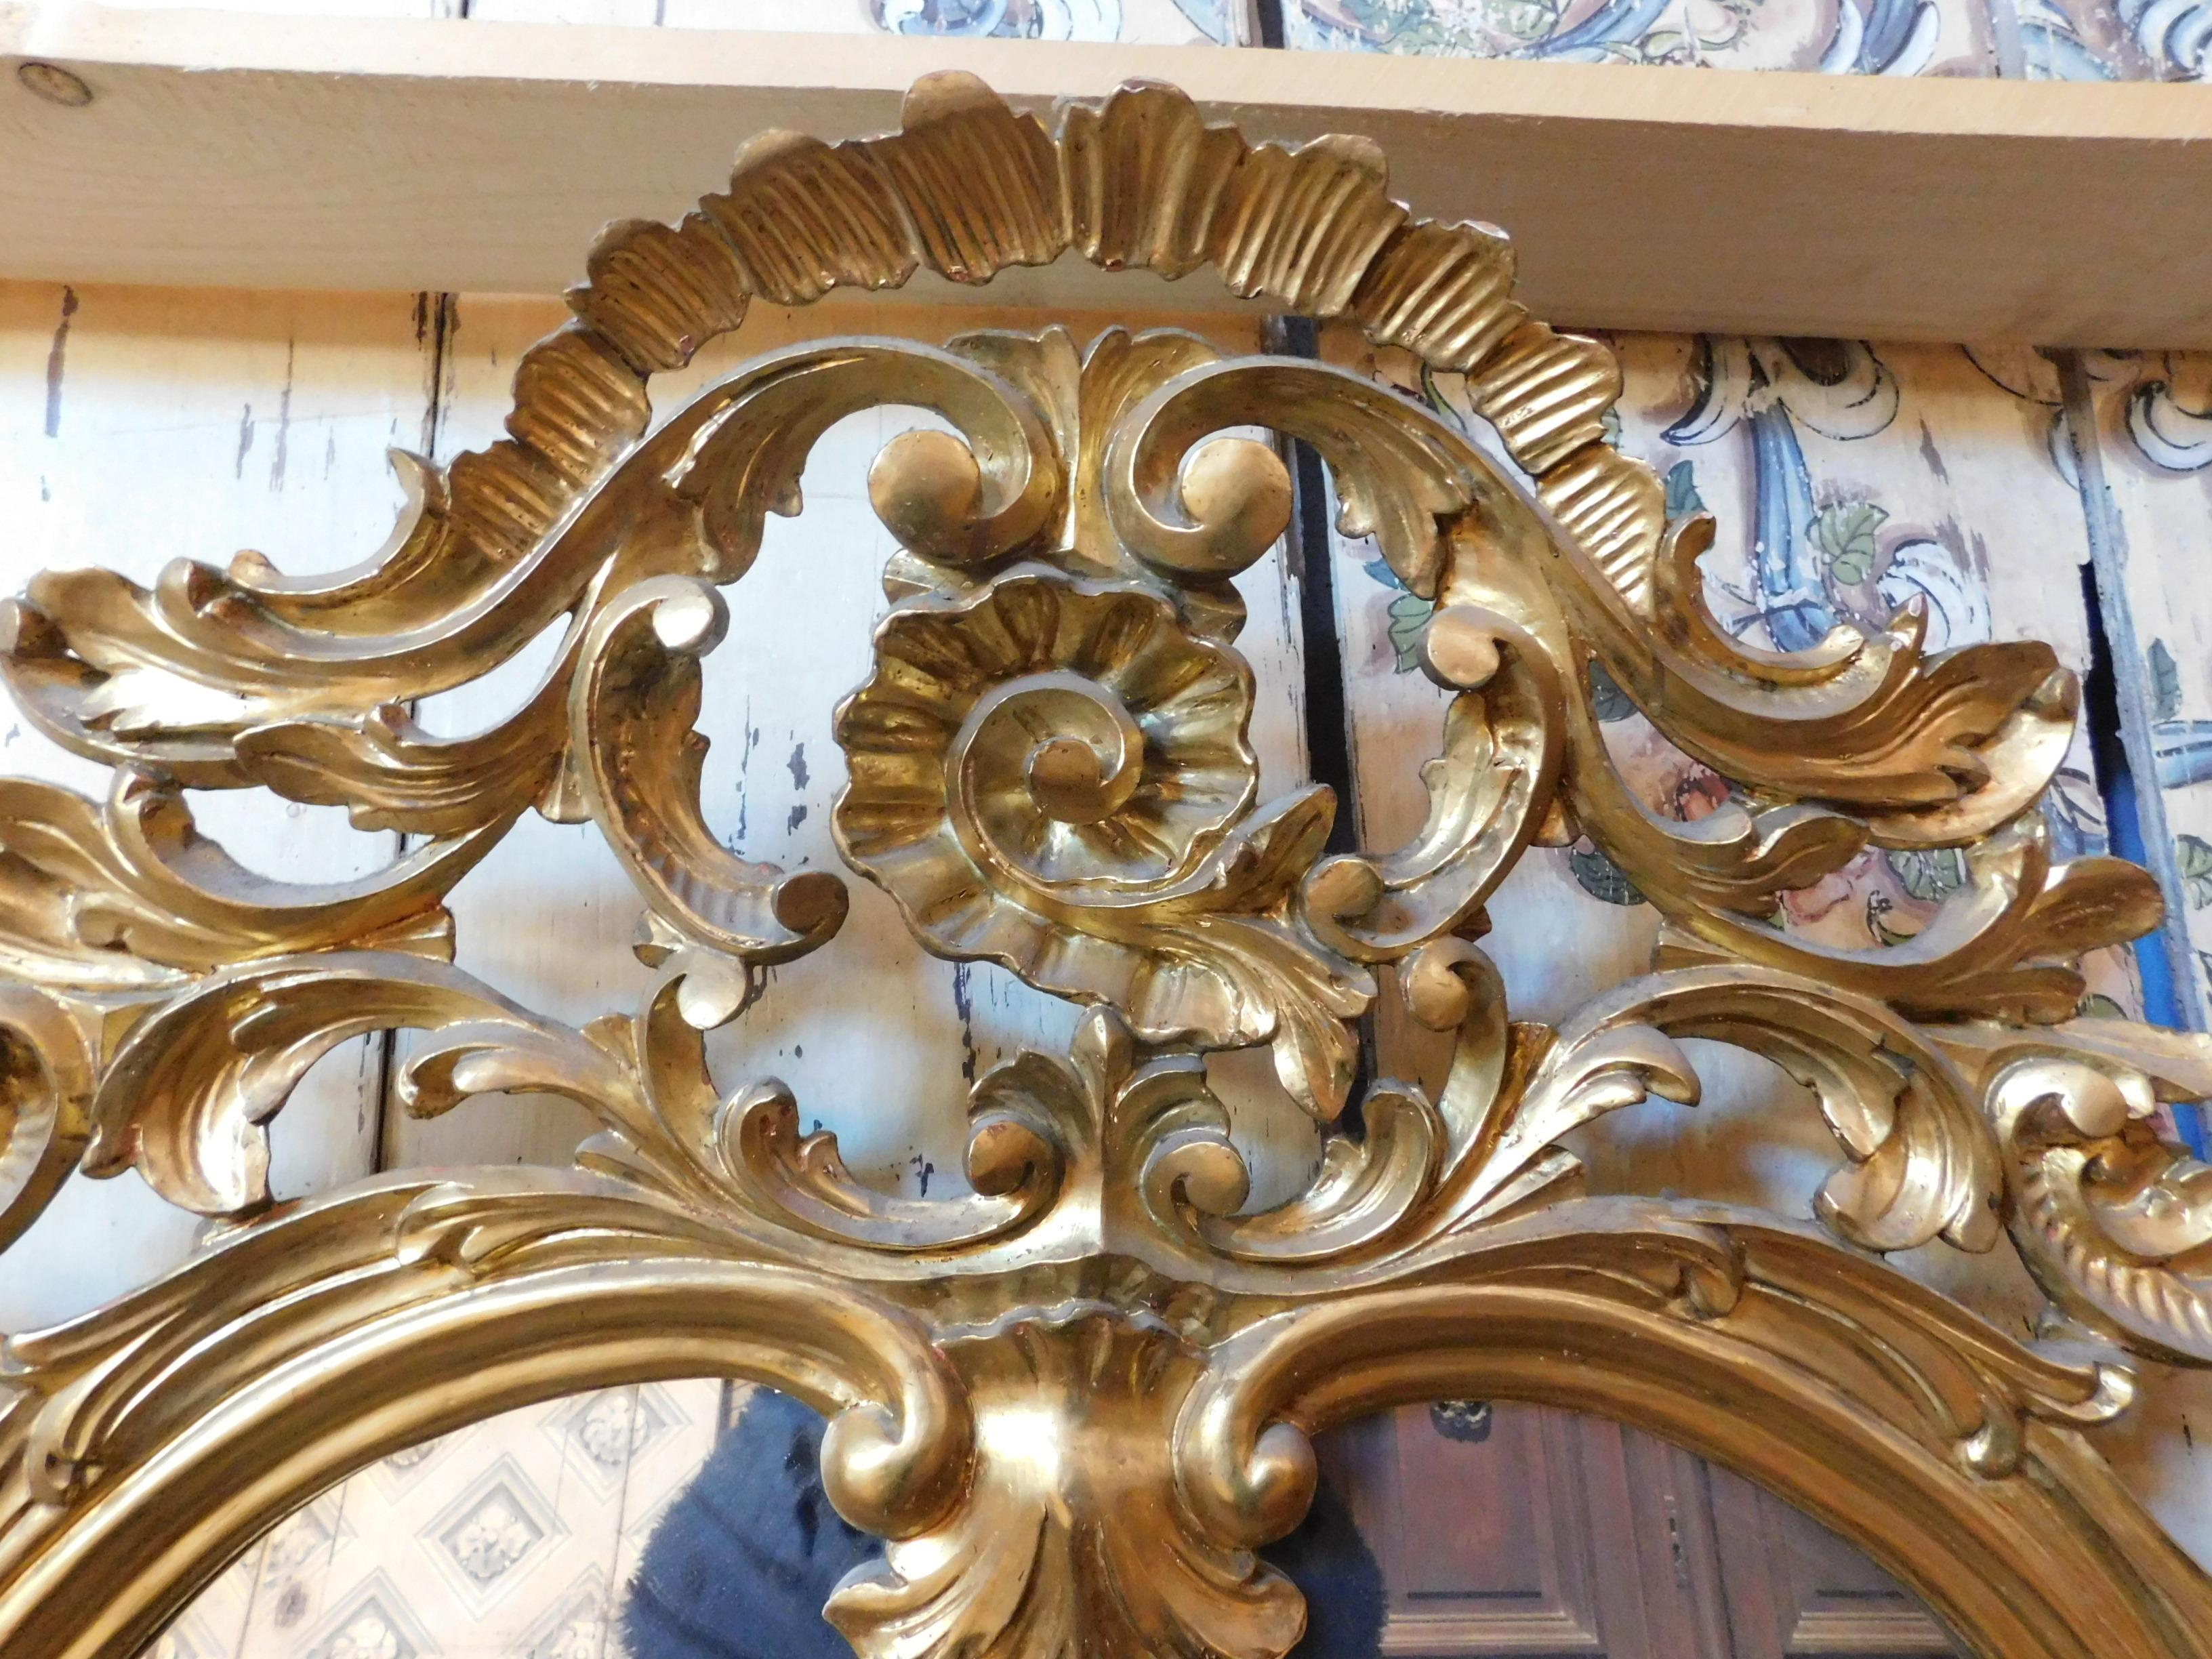 Long miroir vintage doré, avec cadre richement sculpté et 3 miroirs divisés, à l'origine il était monté sur un meuble d'une ancienne pâtisserie piémontaise, convient pour les clubs chics, les bars, les bureaux ou dans un intérieur de luxe, même